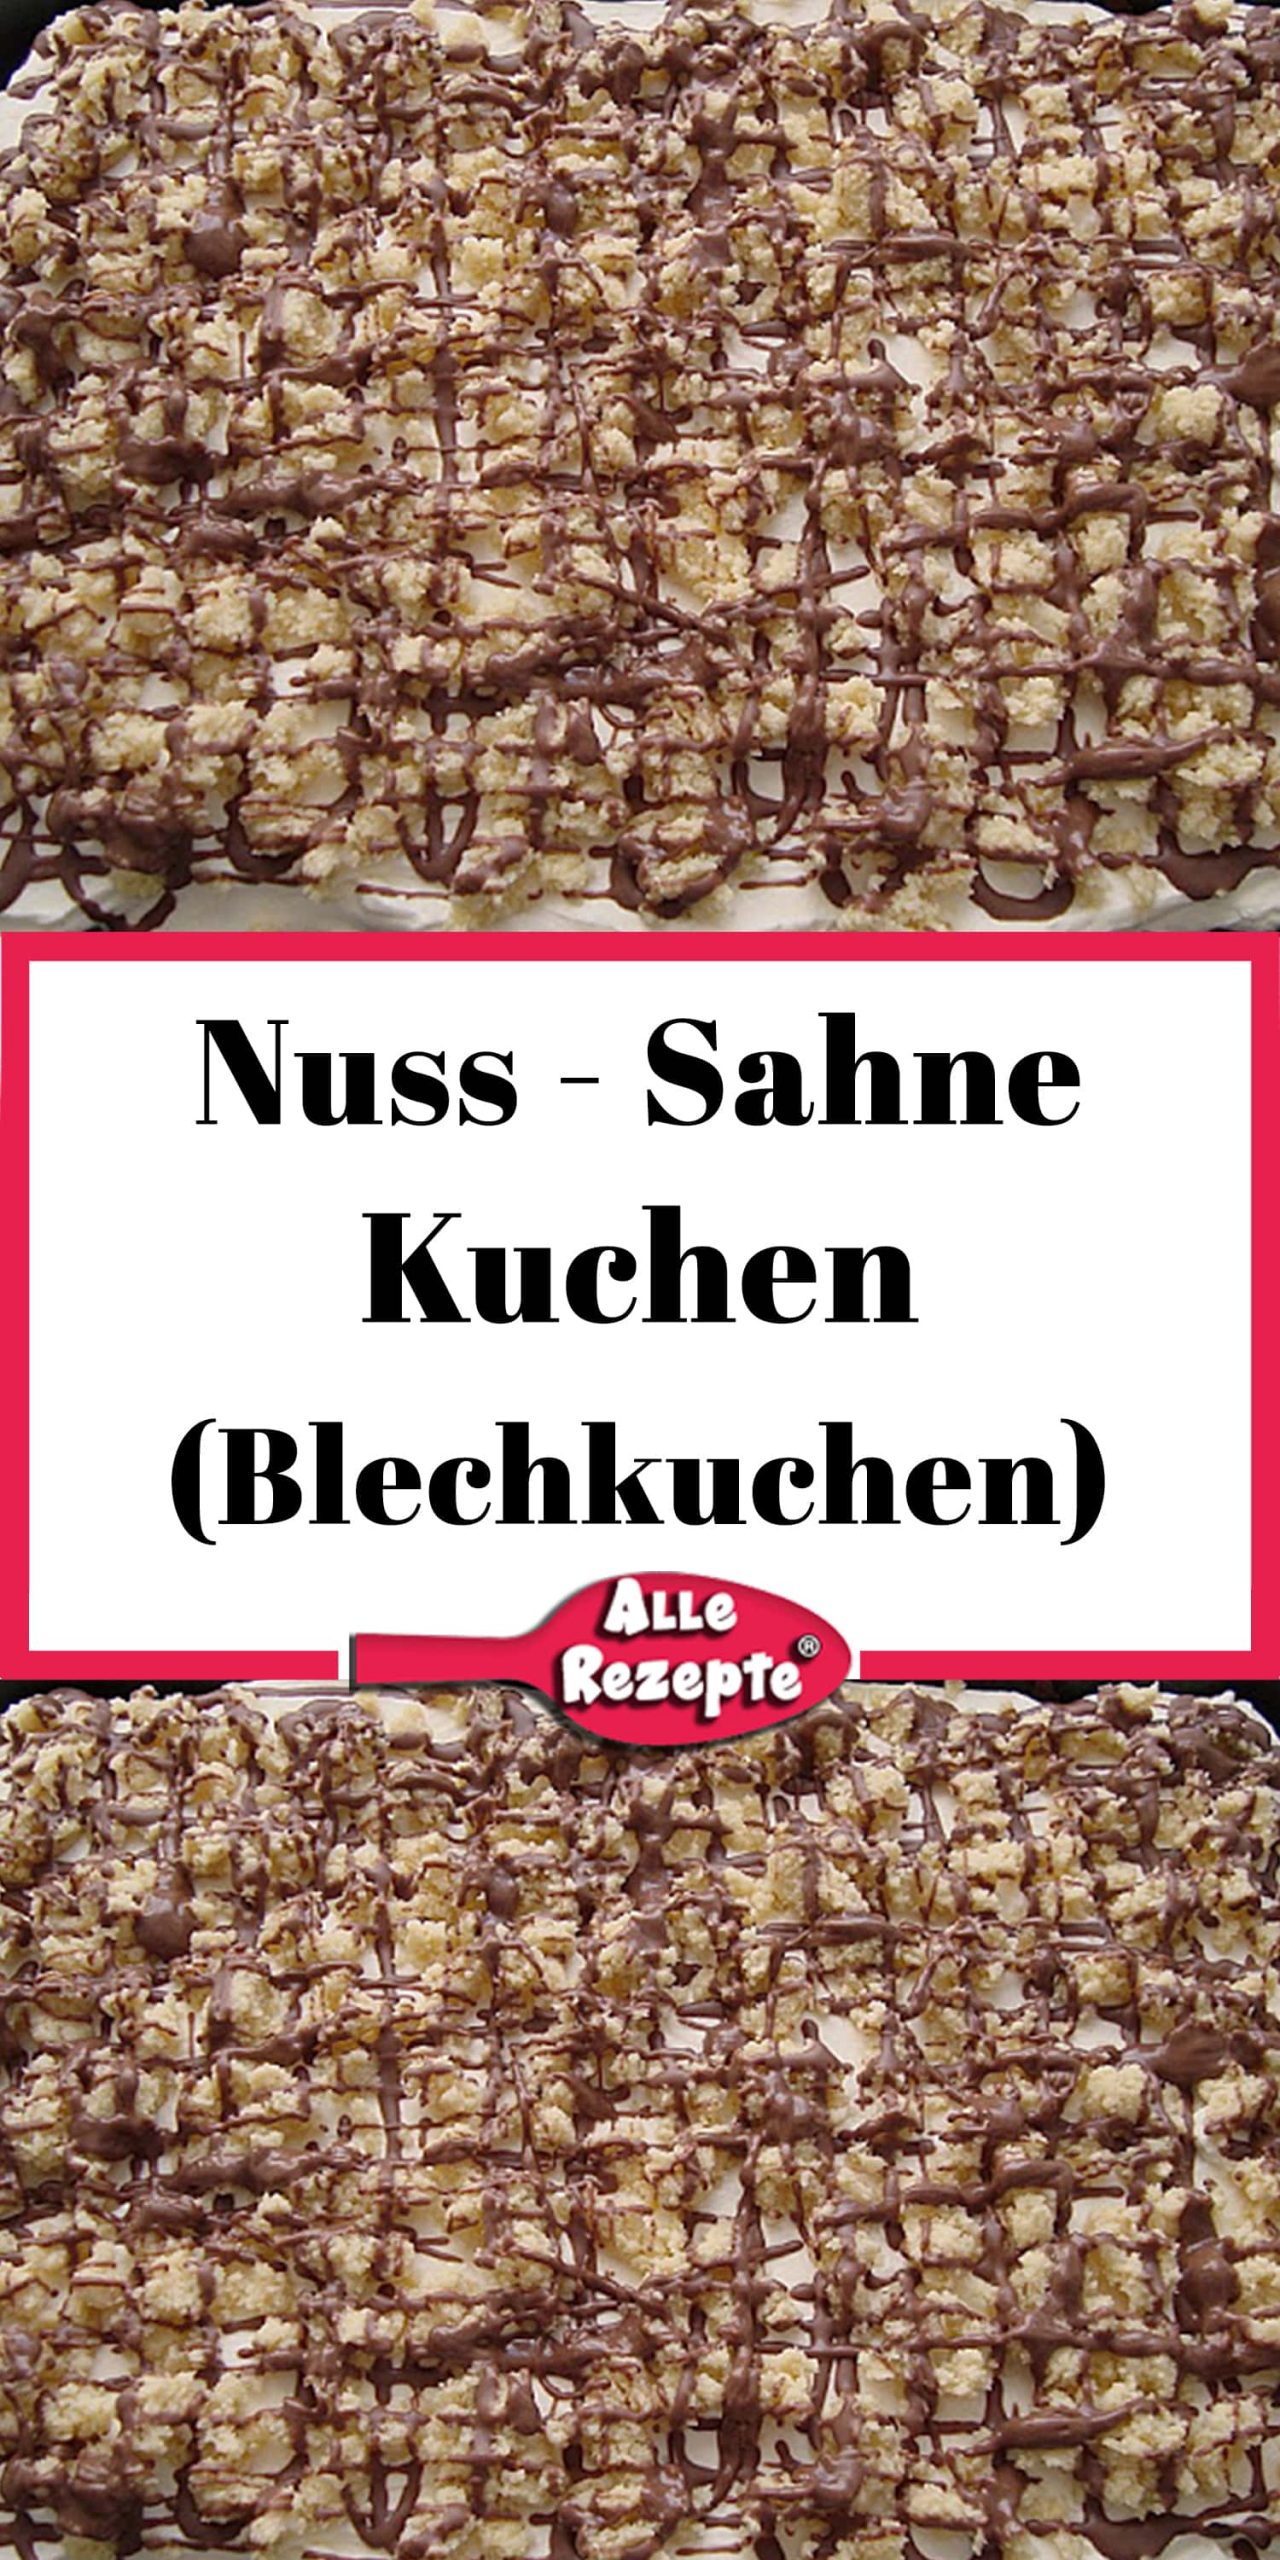 Nuss - Sahne - Kuchen (Blechkuchen) - Alle Rezepte